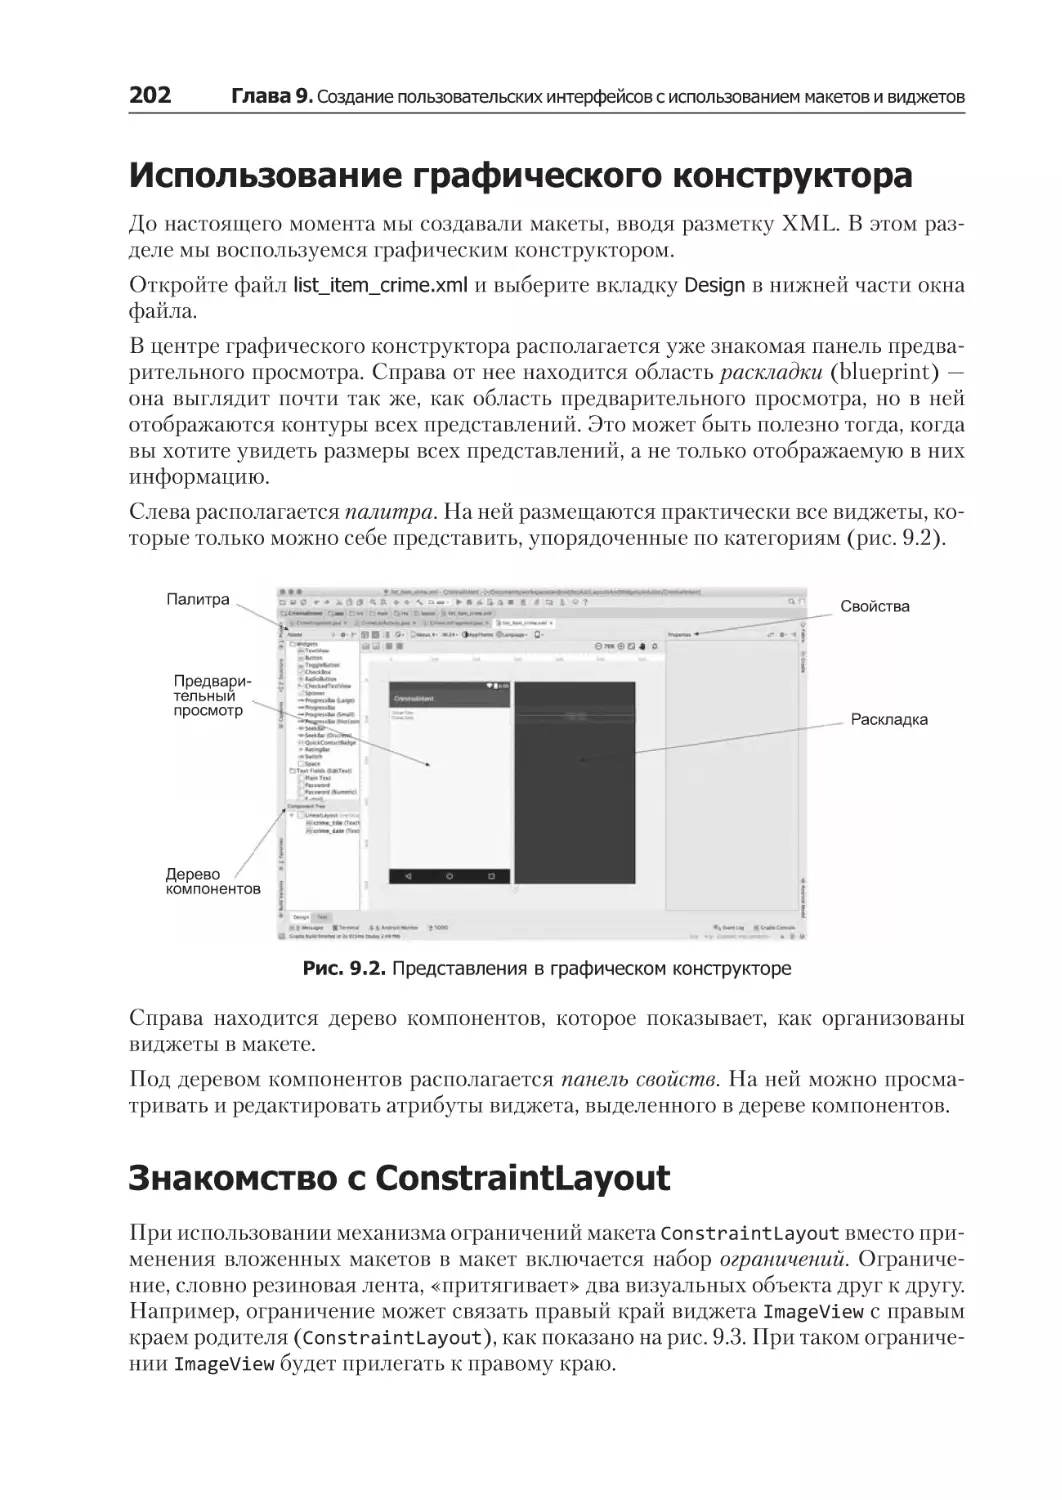 Использование графического конструктора
Знакомство с ConstraintLayout